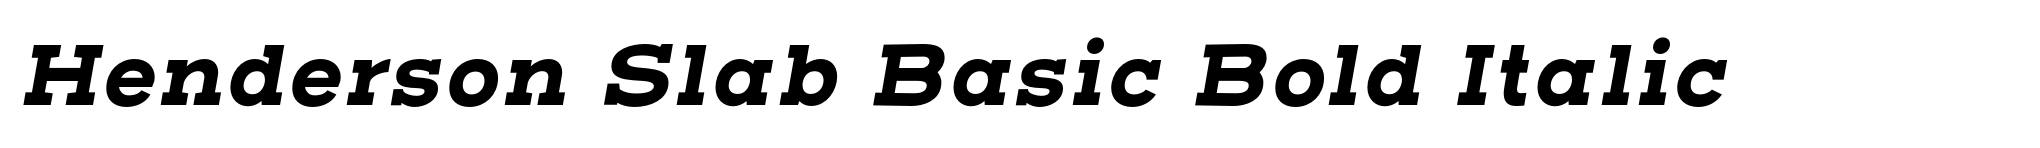 Henderson Slab Basic Bold Italic image